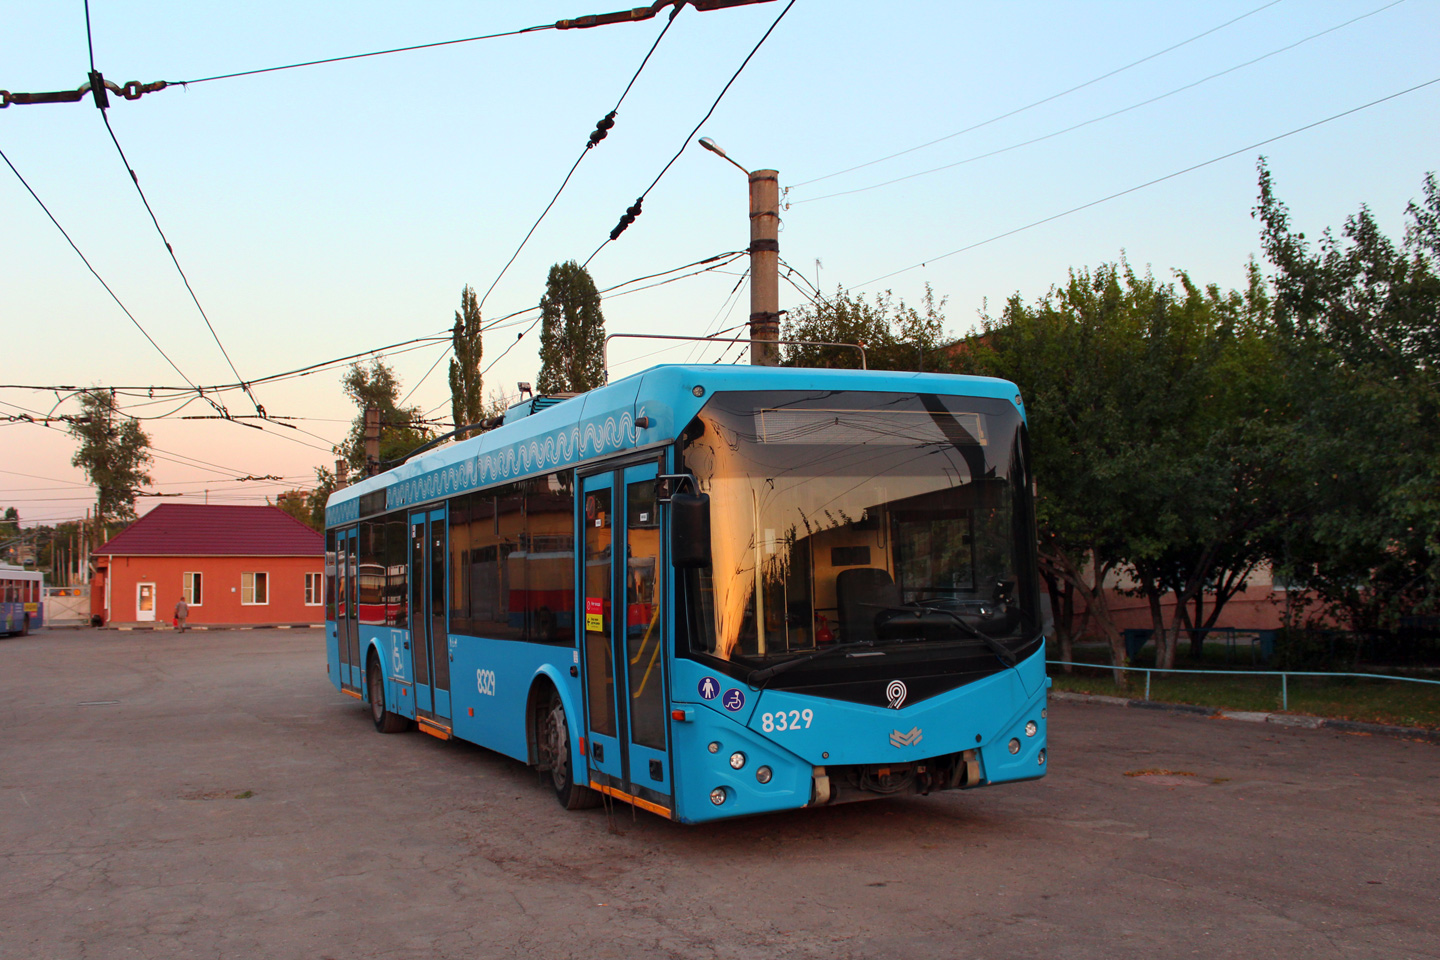 Саратов, БКМ 321 № 8329; Саратов — Поставка троллейбусов из Москвы — 2020